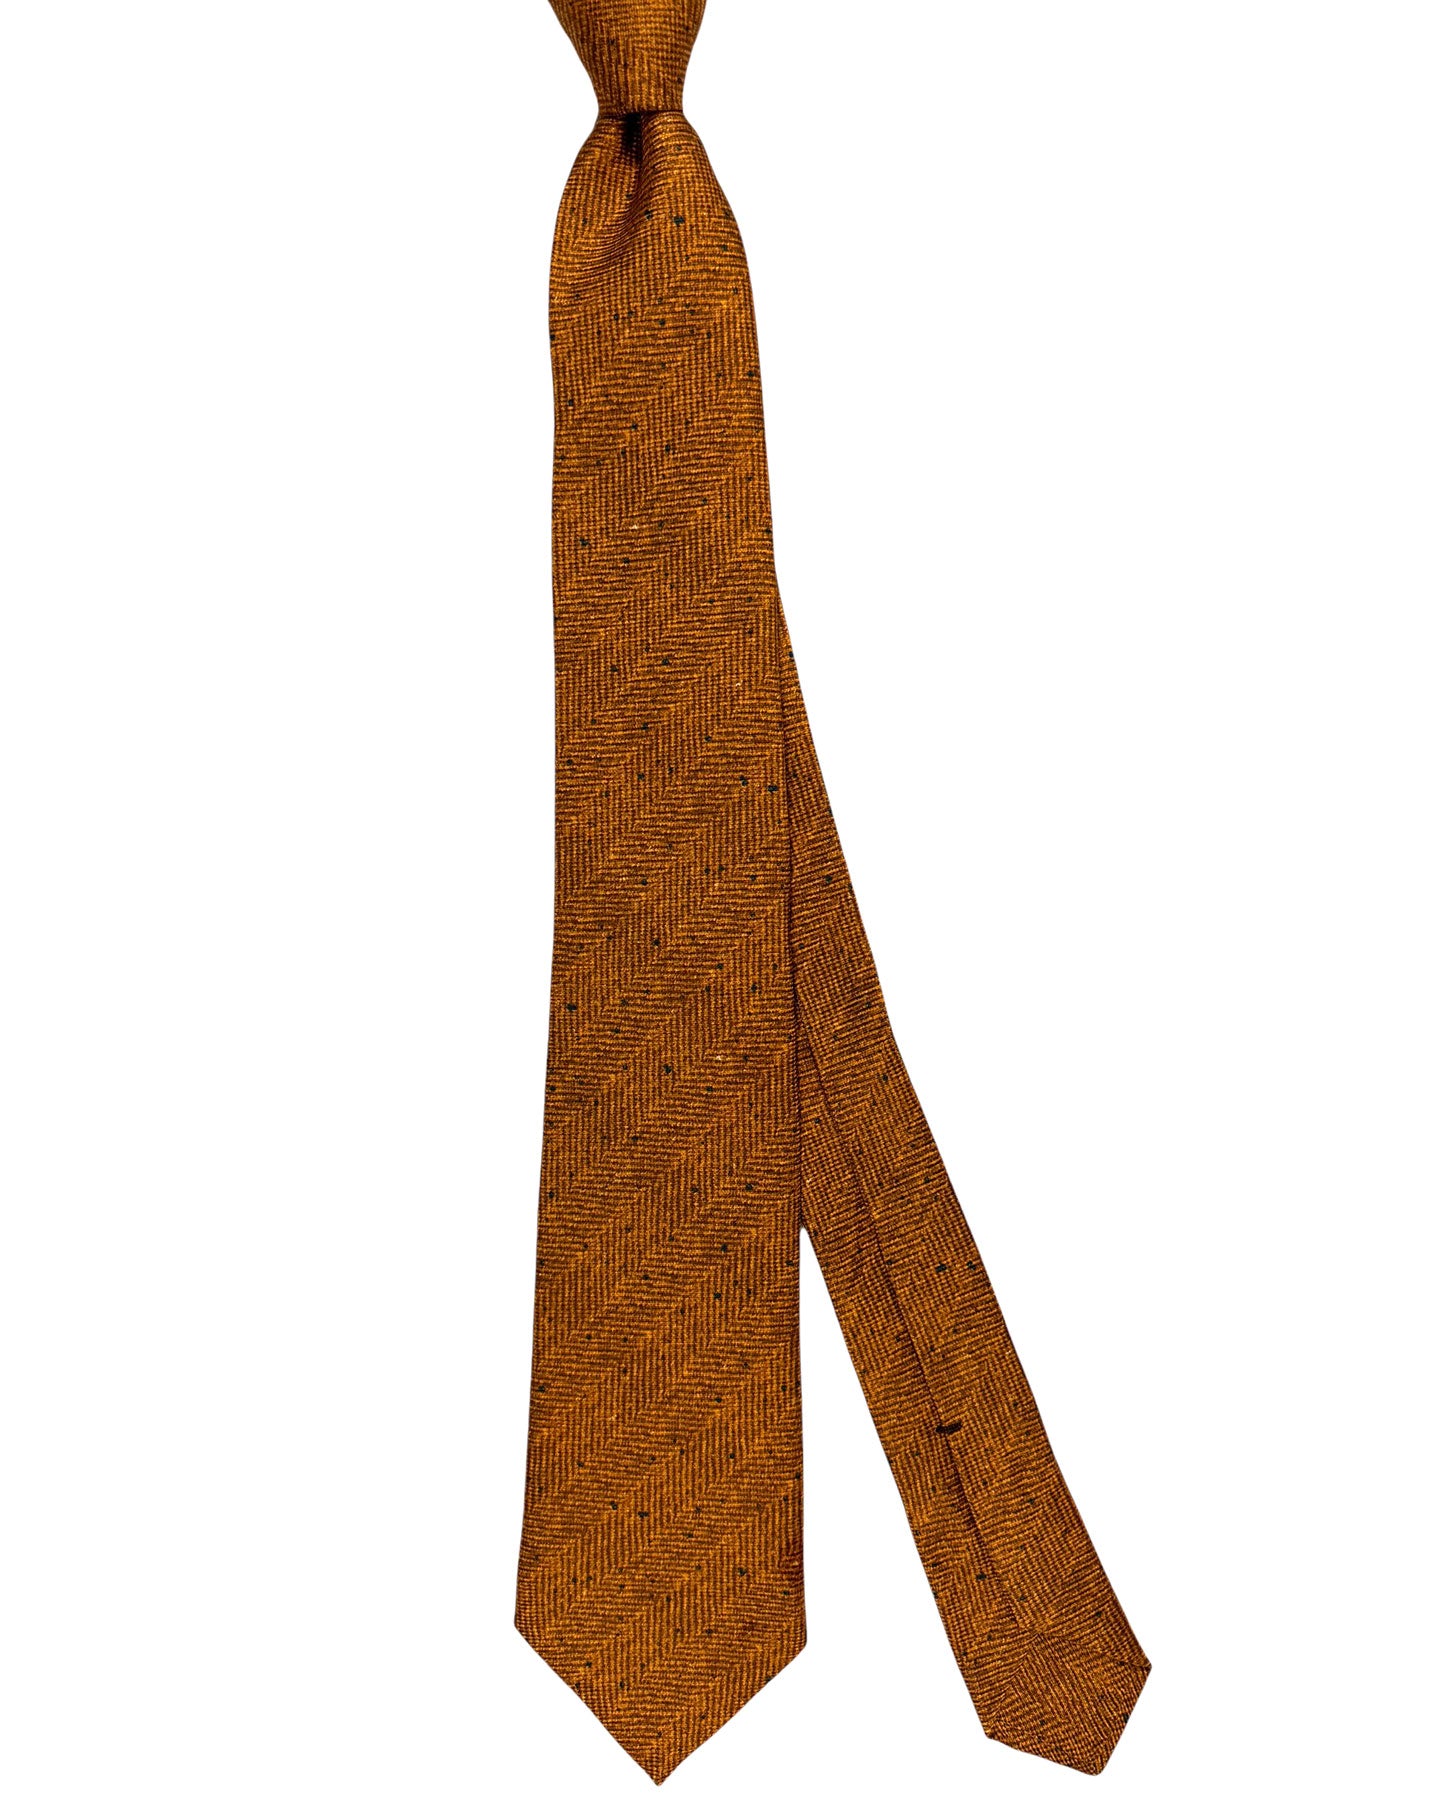 Kiton Silk Tie Brown Herringbone - Sevenfold Necktie